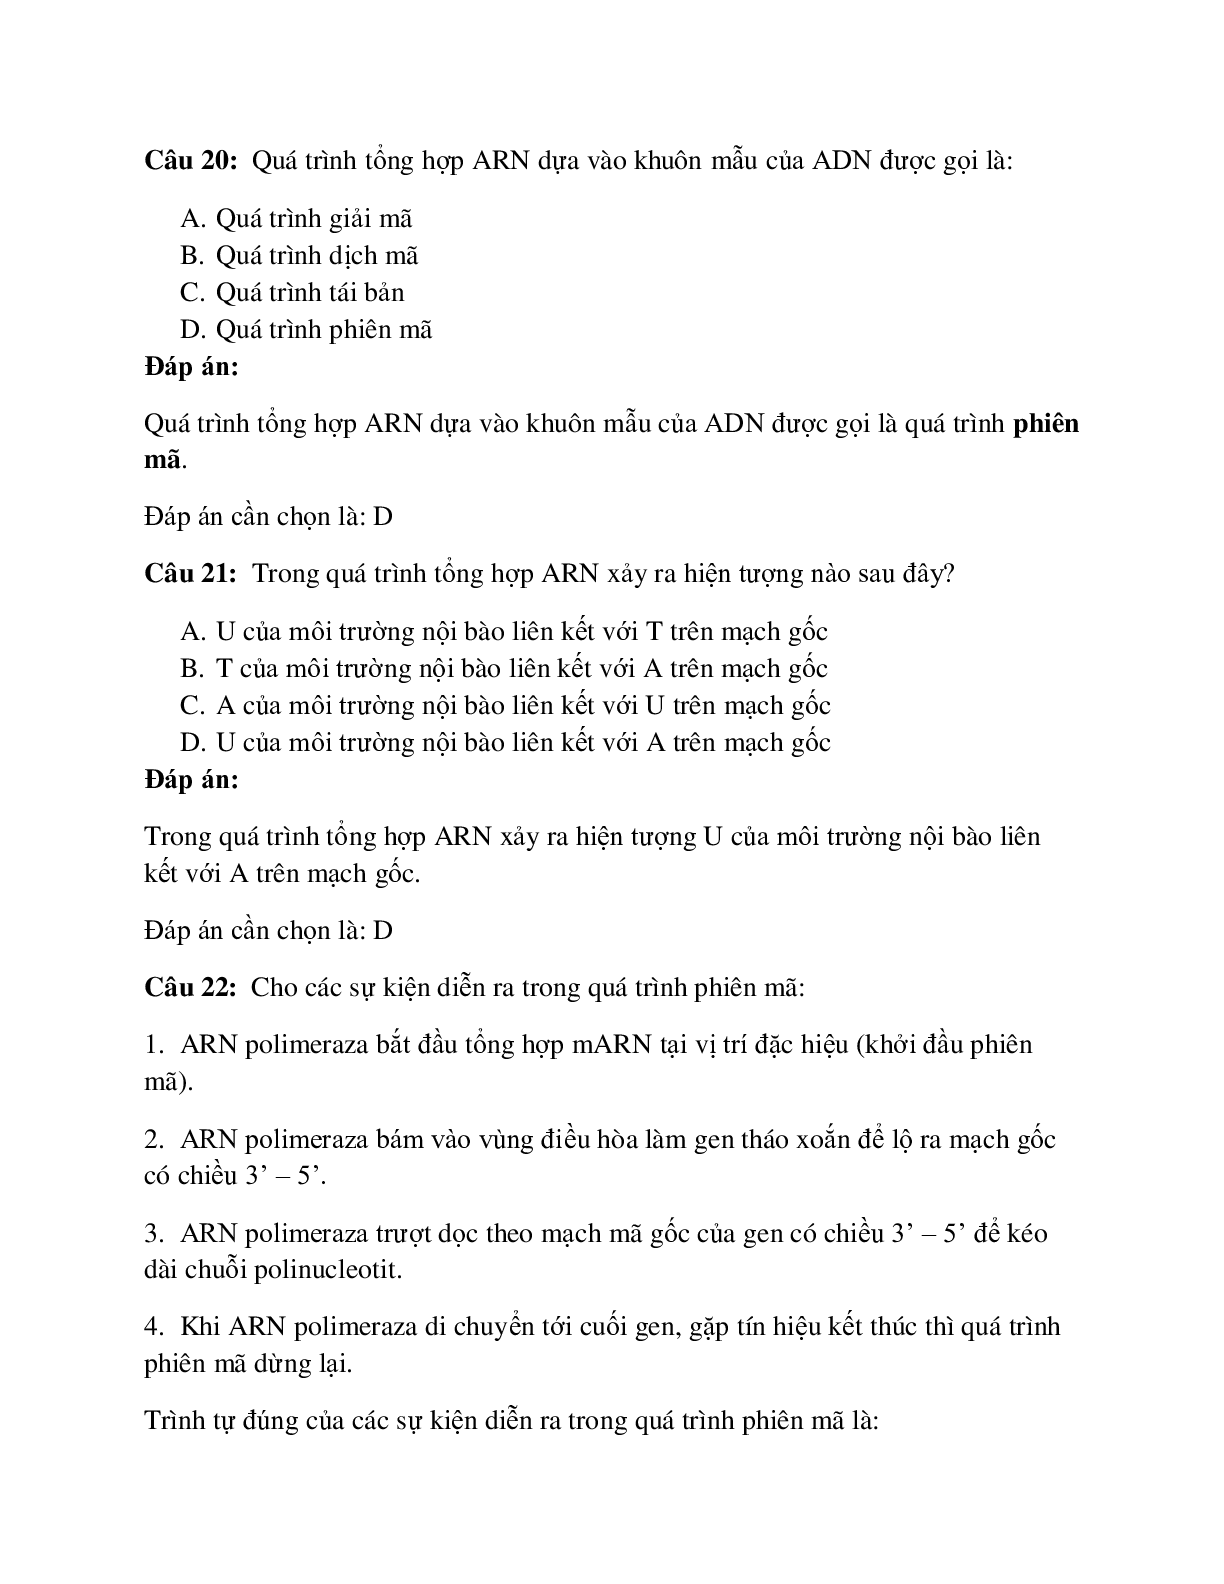 50 câu Trắc nghiệm Sinh học lớp 12 Bài 2 có đáp án 2023: ARN và quá trình phiên mã (trang 8)